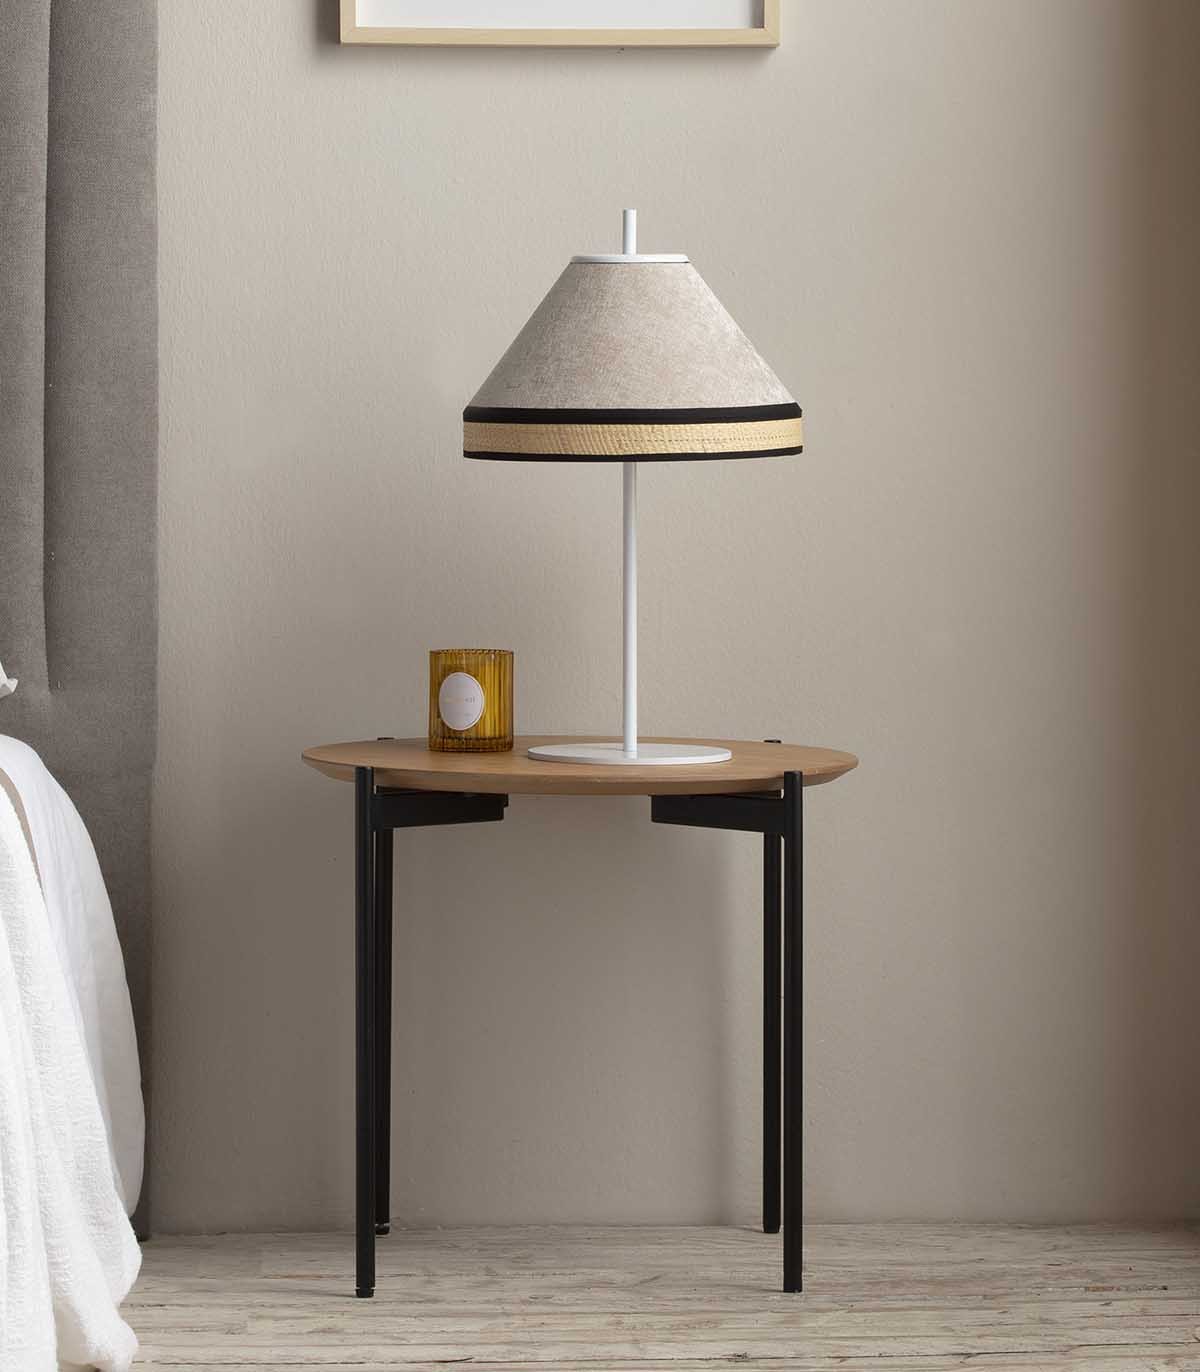 Lampe de table DECO, Catalogue lampes de table design